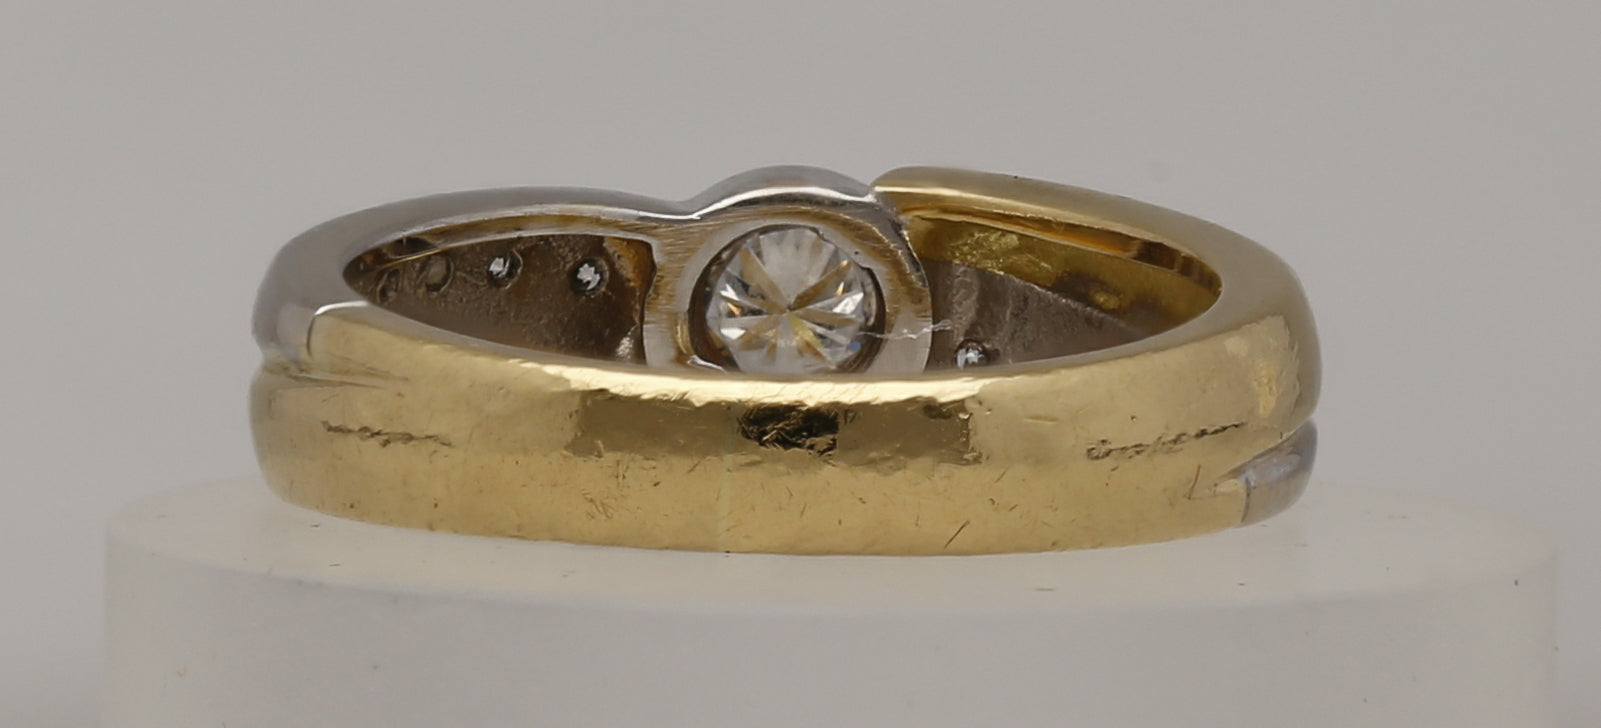 Second Hand Diamant Ring jetzt online kaufen auf kaleaz.